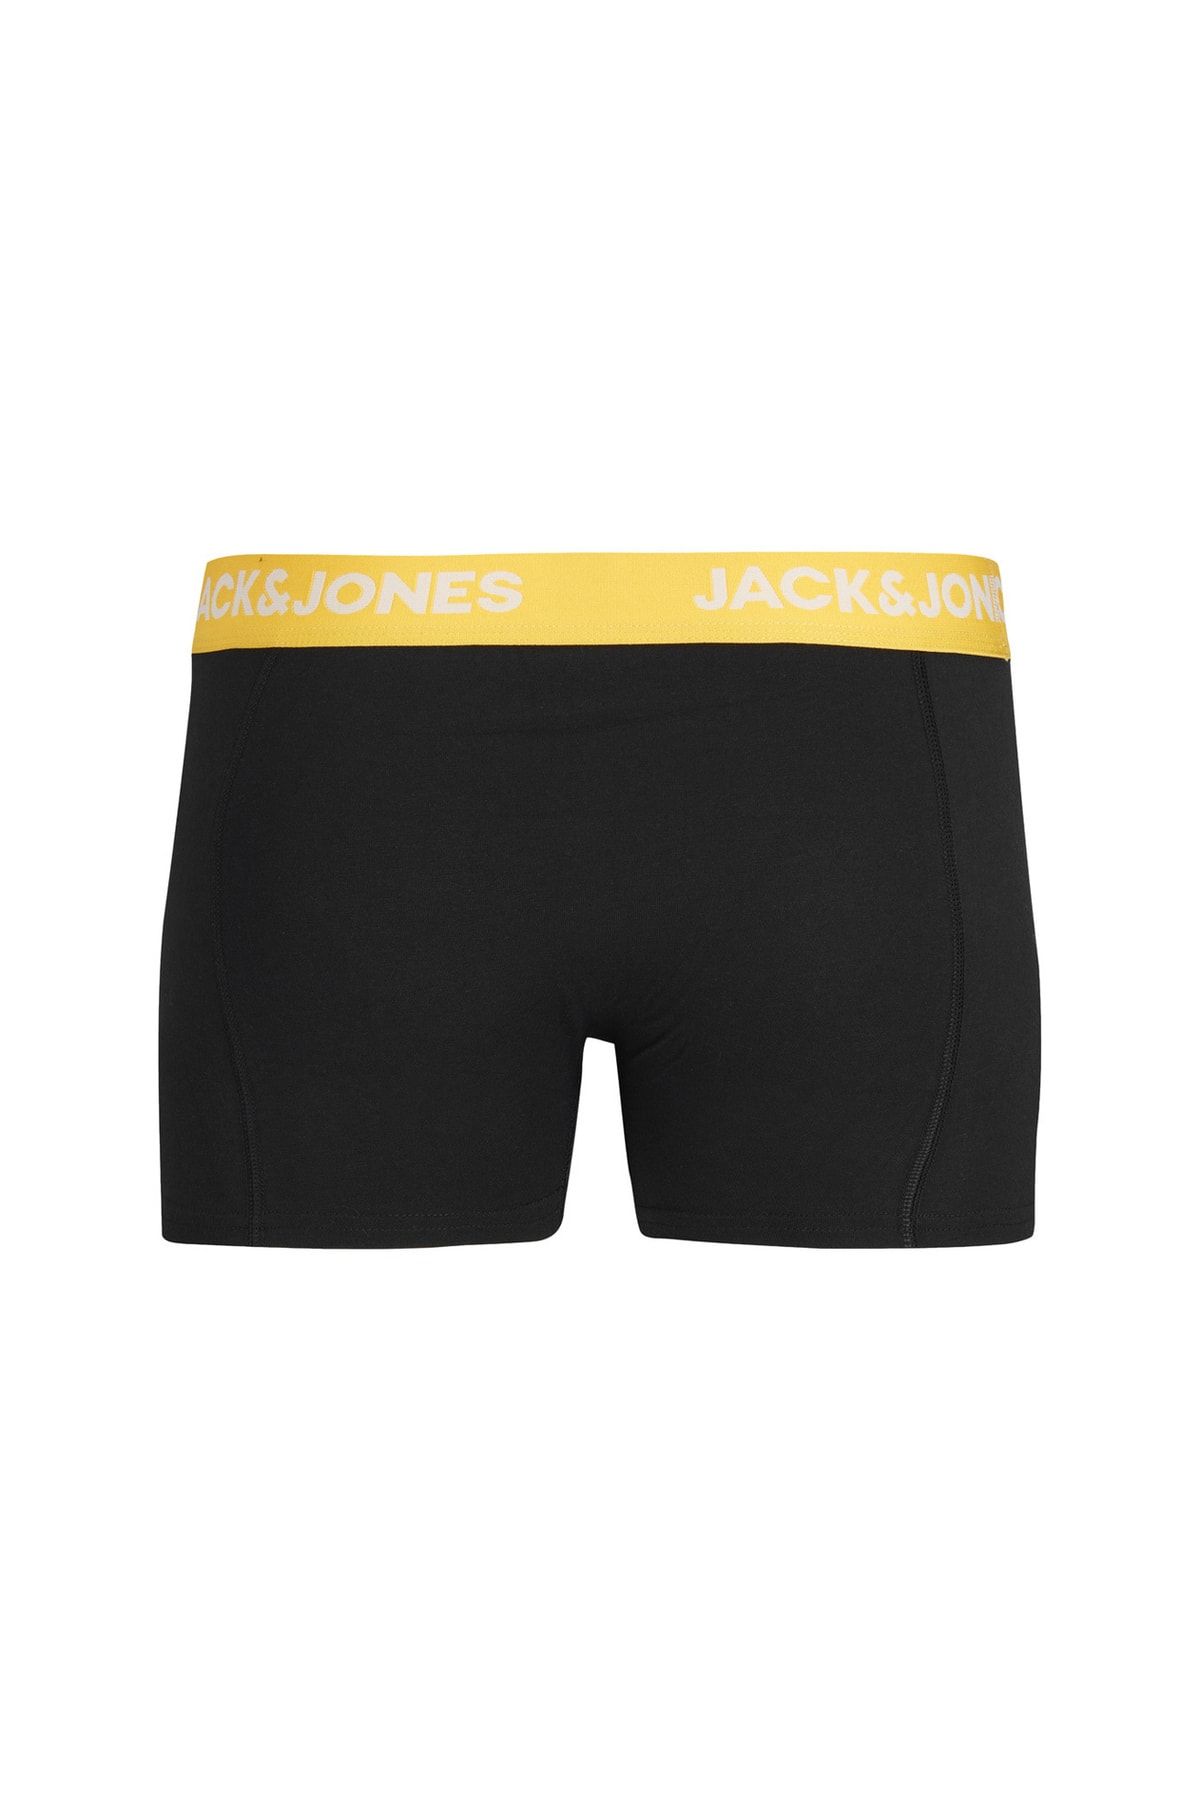 Jack & Jones Siyah Erkek Boxer Jacvıto Solıd Trunk